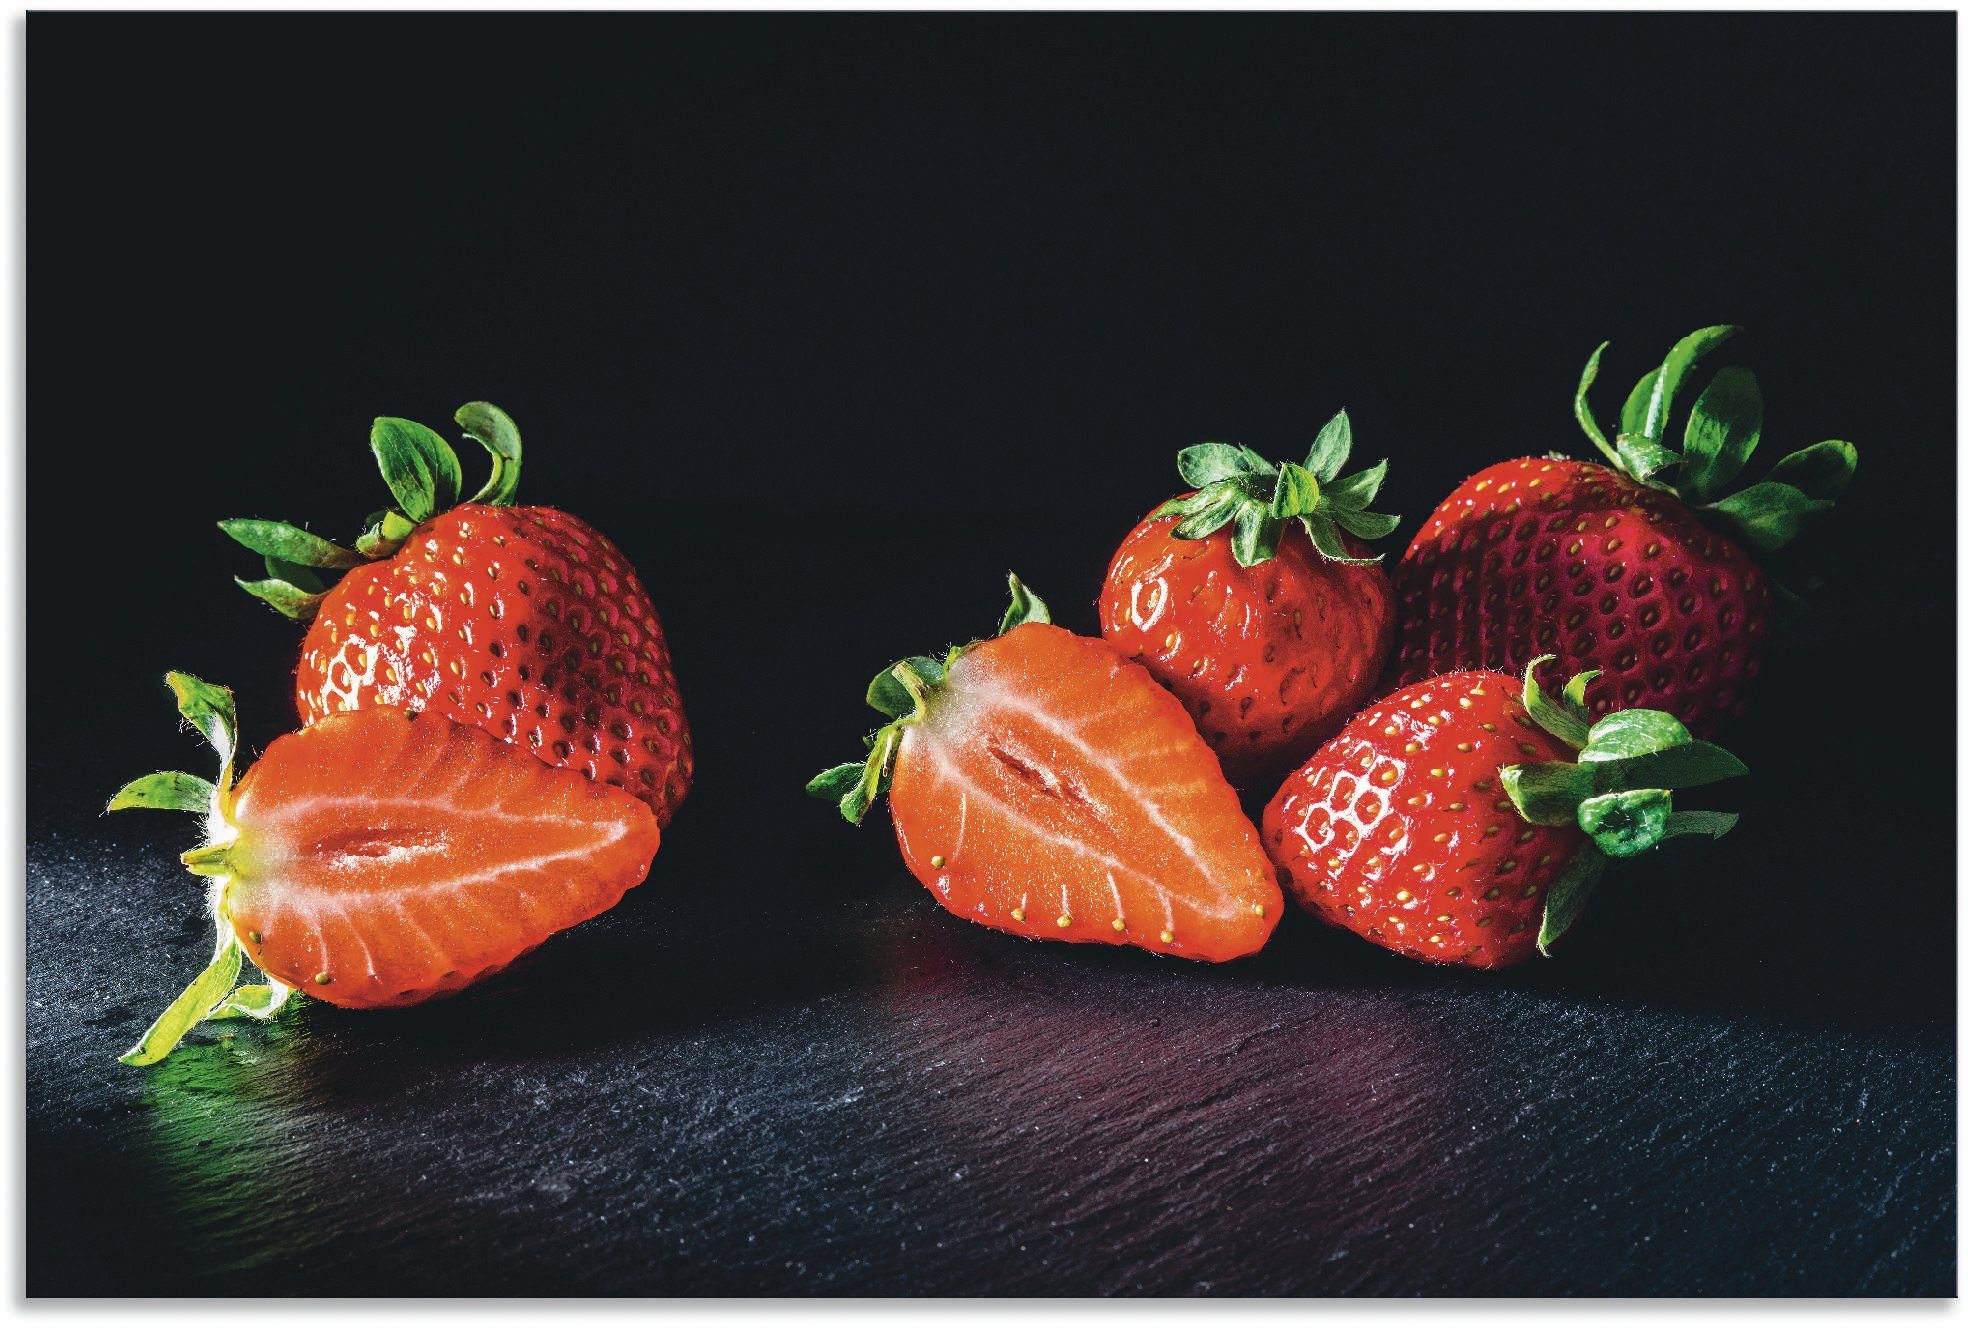 Artland Artprint Erdbeeren, süß und fruchtig in vele afmetingen & productsoorten - artprint van aluminium / artprint voor buiten, artprint op linnen, poster, muursticker / wandfoli